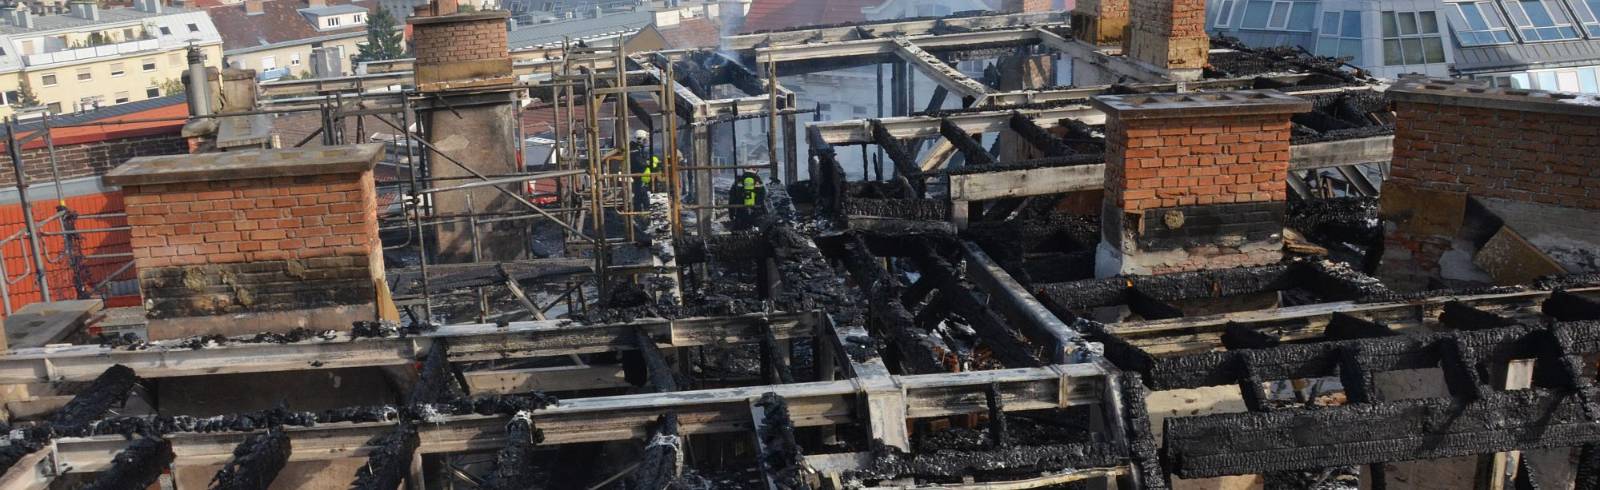 Bezirksflash: Dachbrand löst Großeinsatz aus